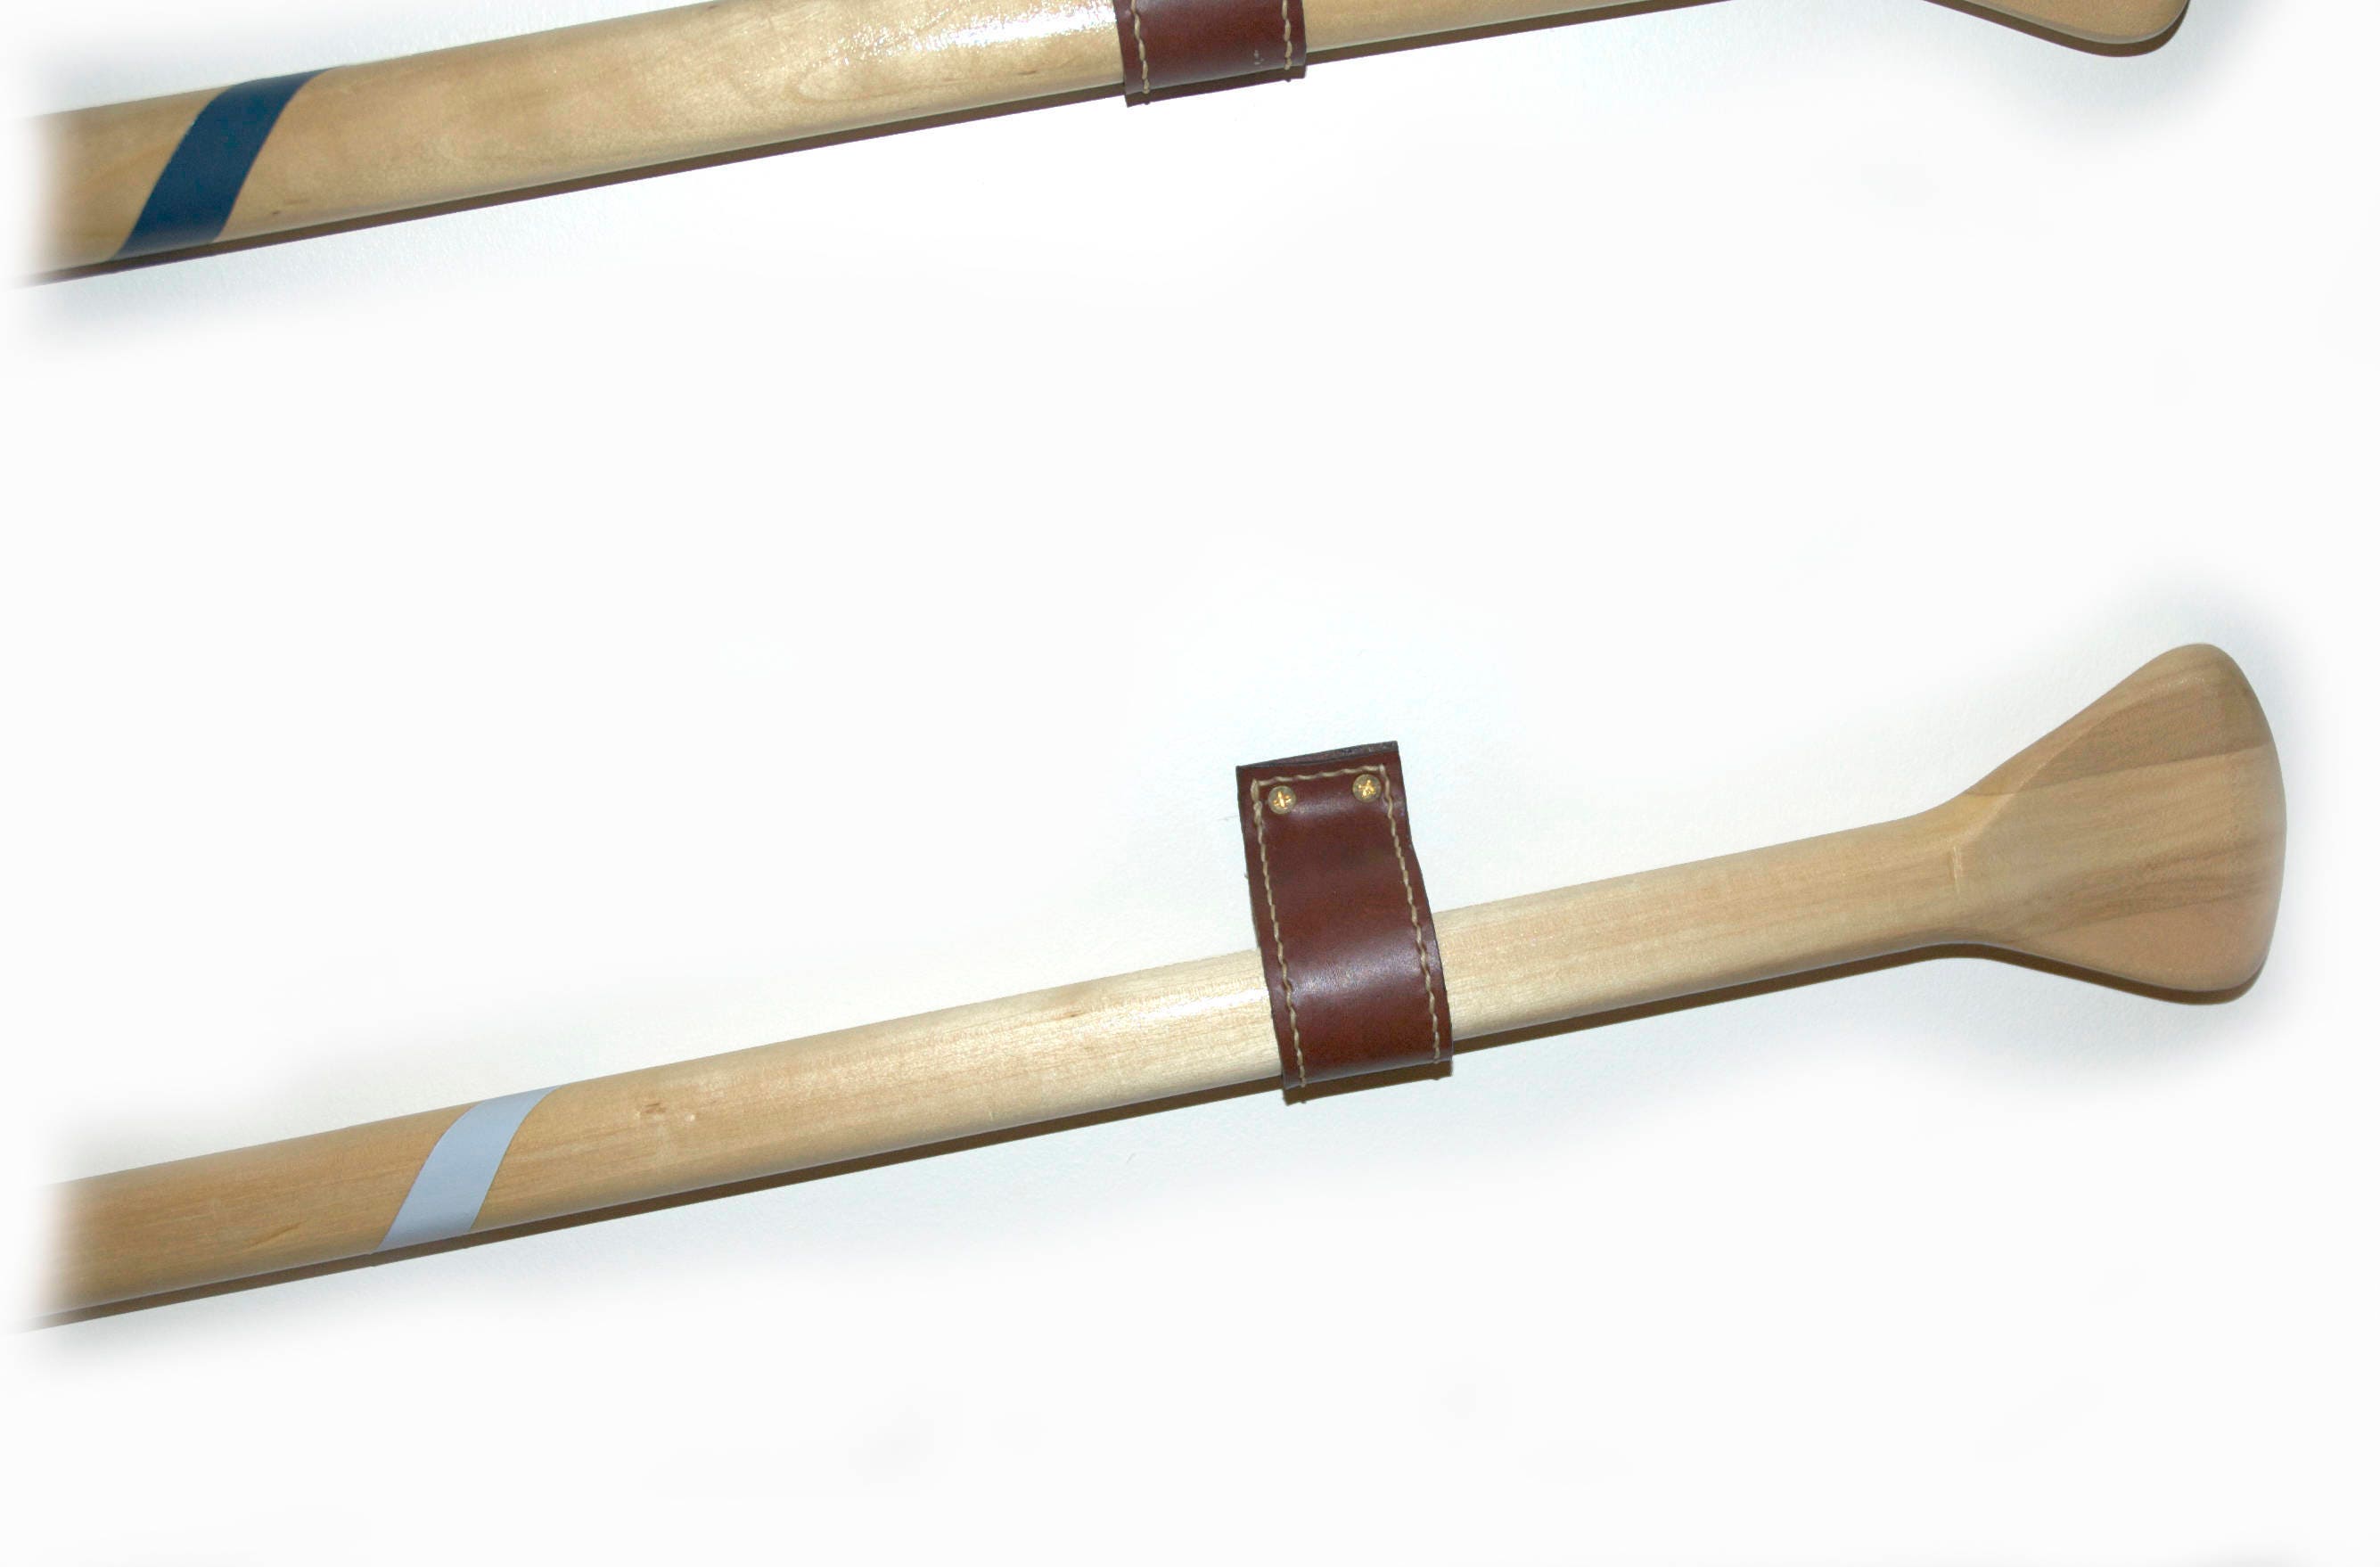 leather paddle hangers set of two wood canoe paddle